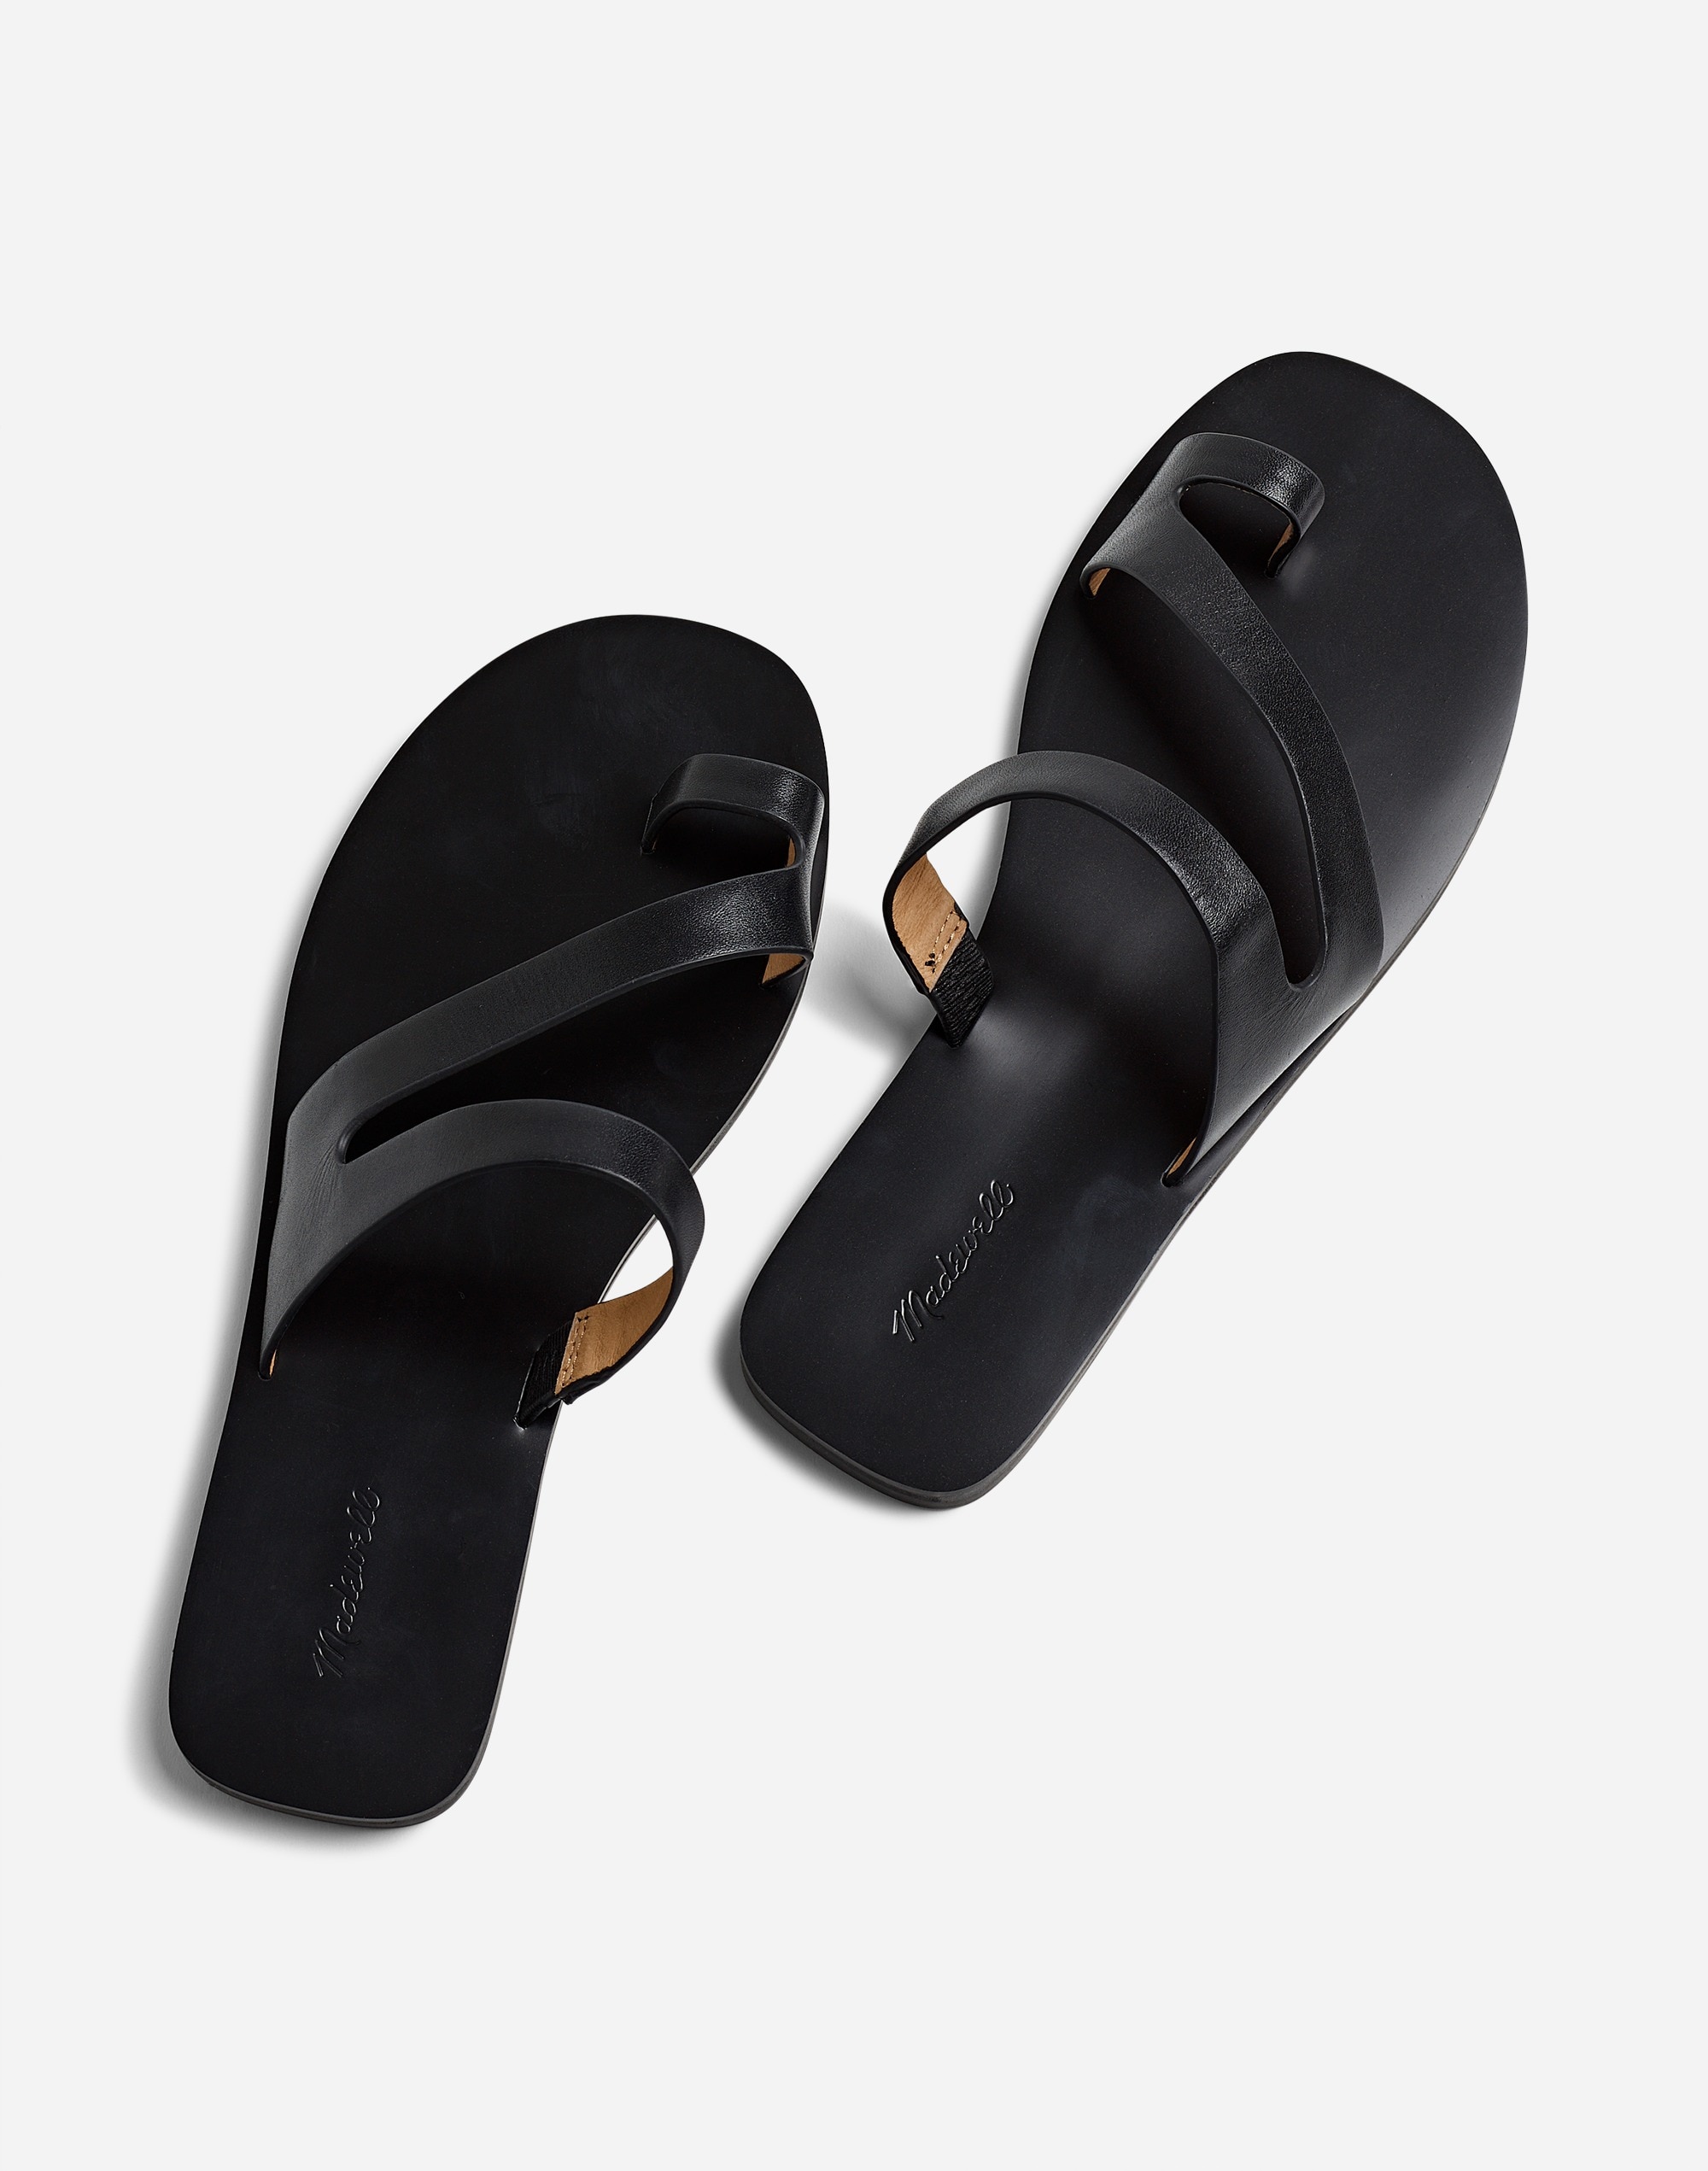 The Gabi Asymmetric-Strap Sandal